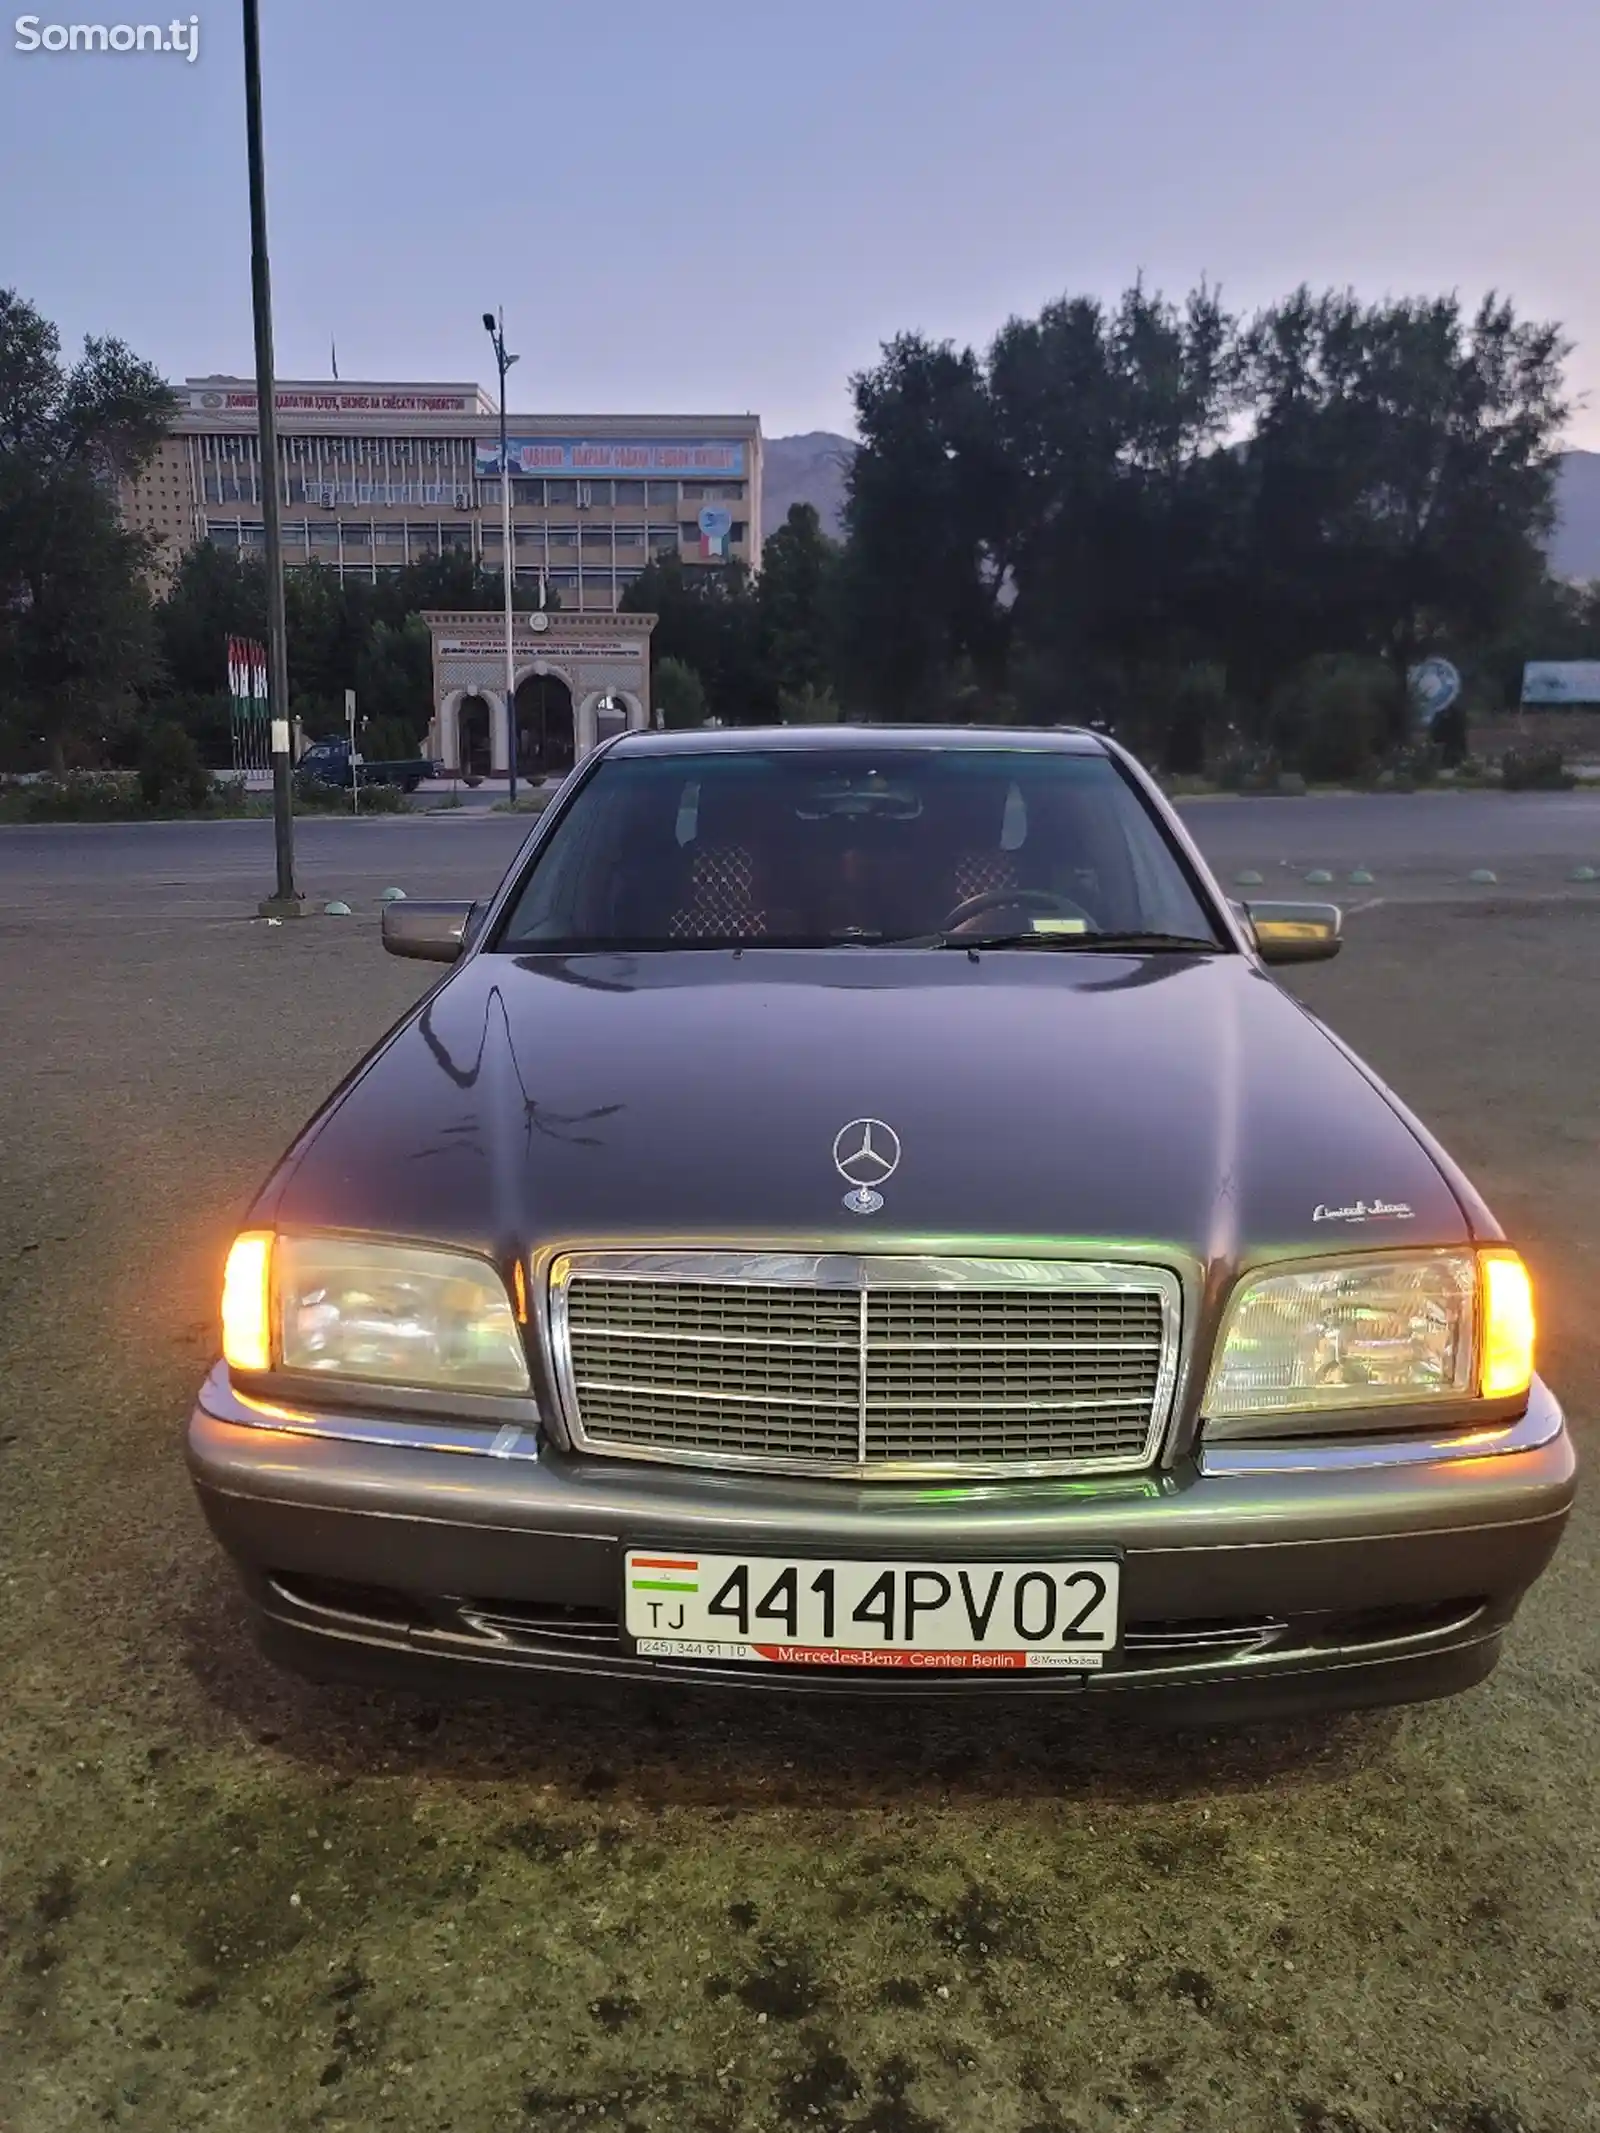 Mercedes-Benz C class, 1995-1